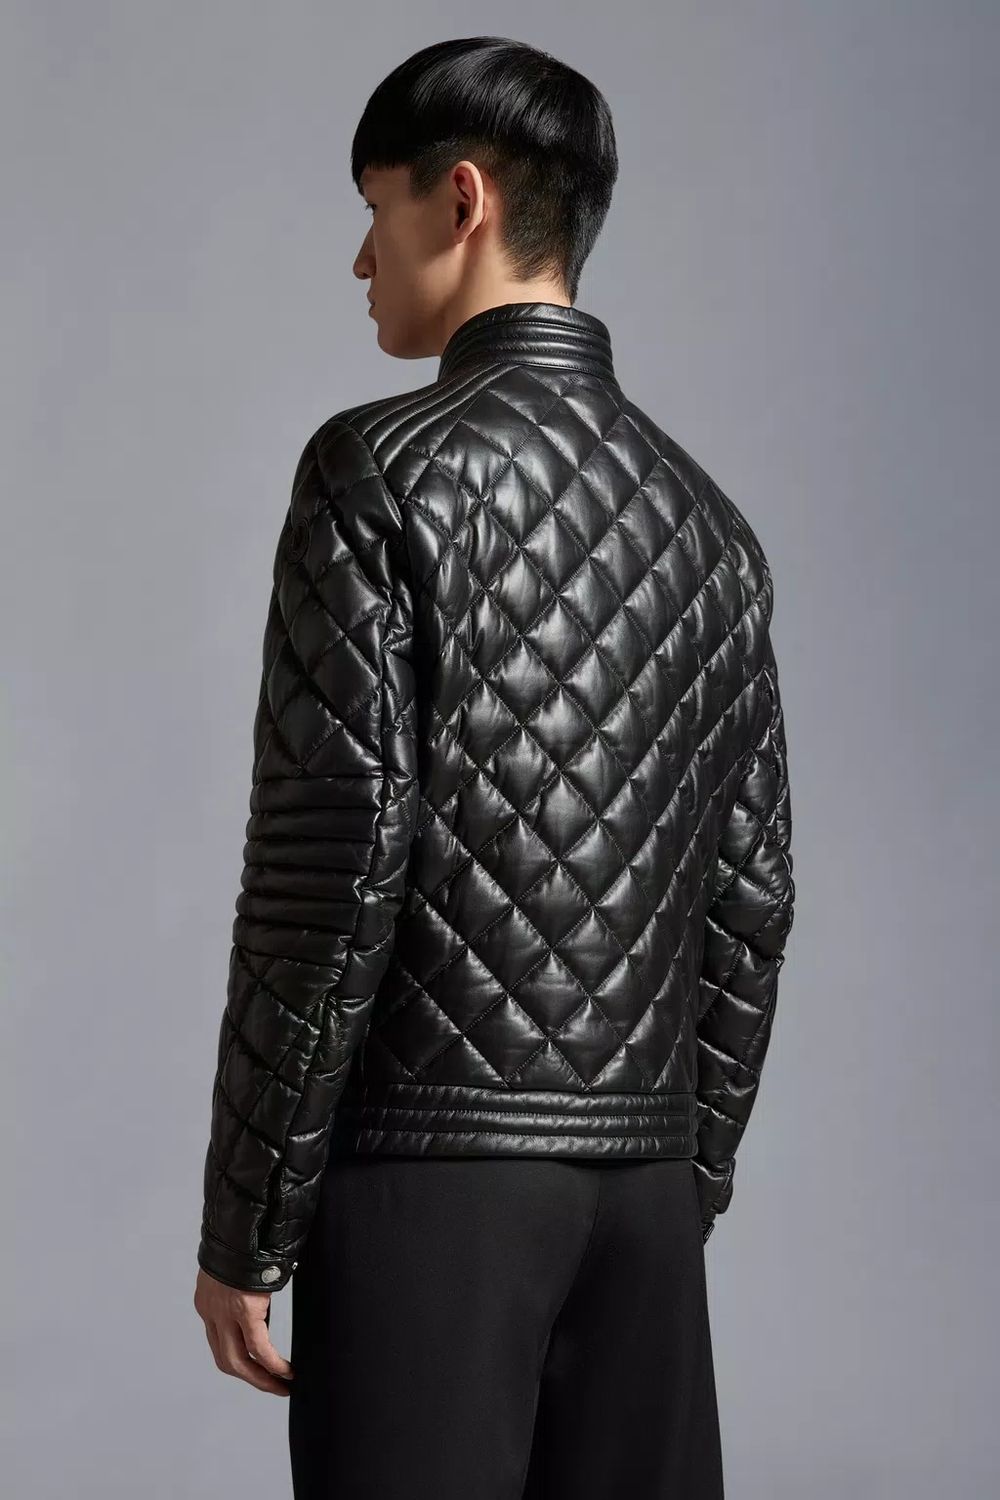 MONCLER Black Leather Biker Jacket for Men - FW23 Collection